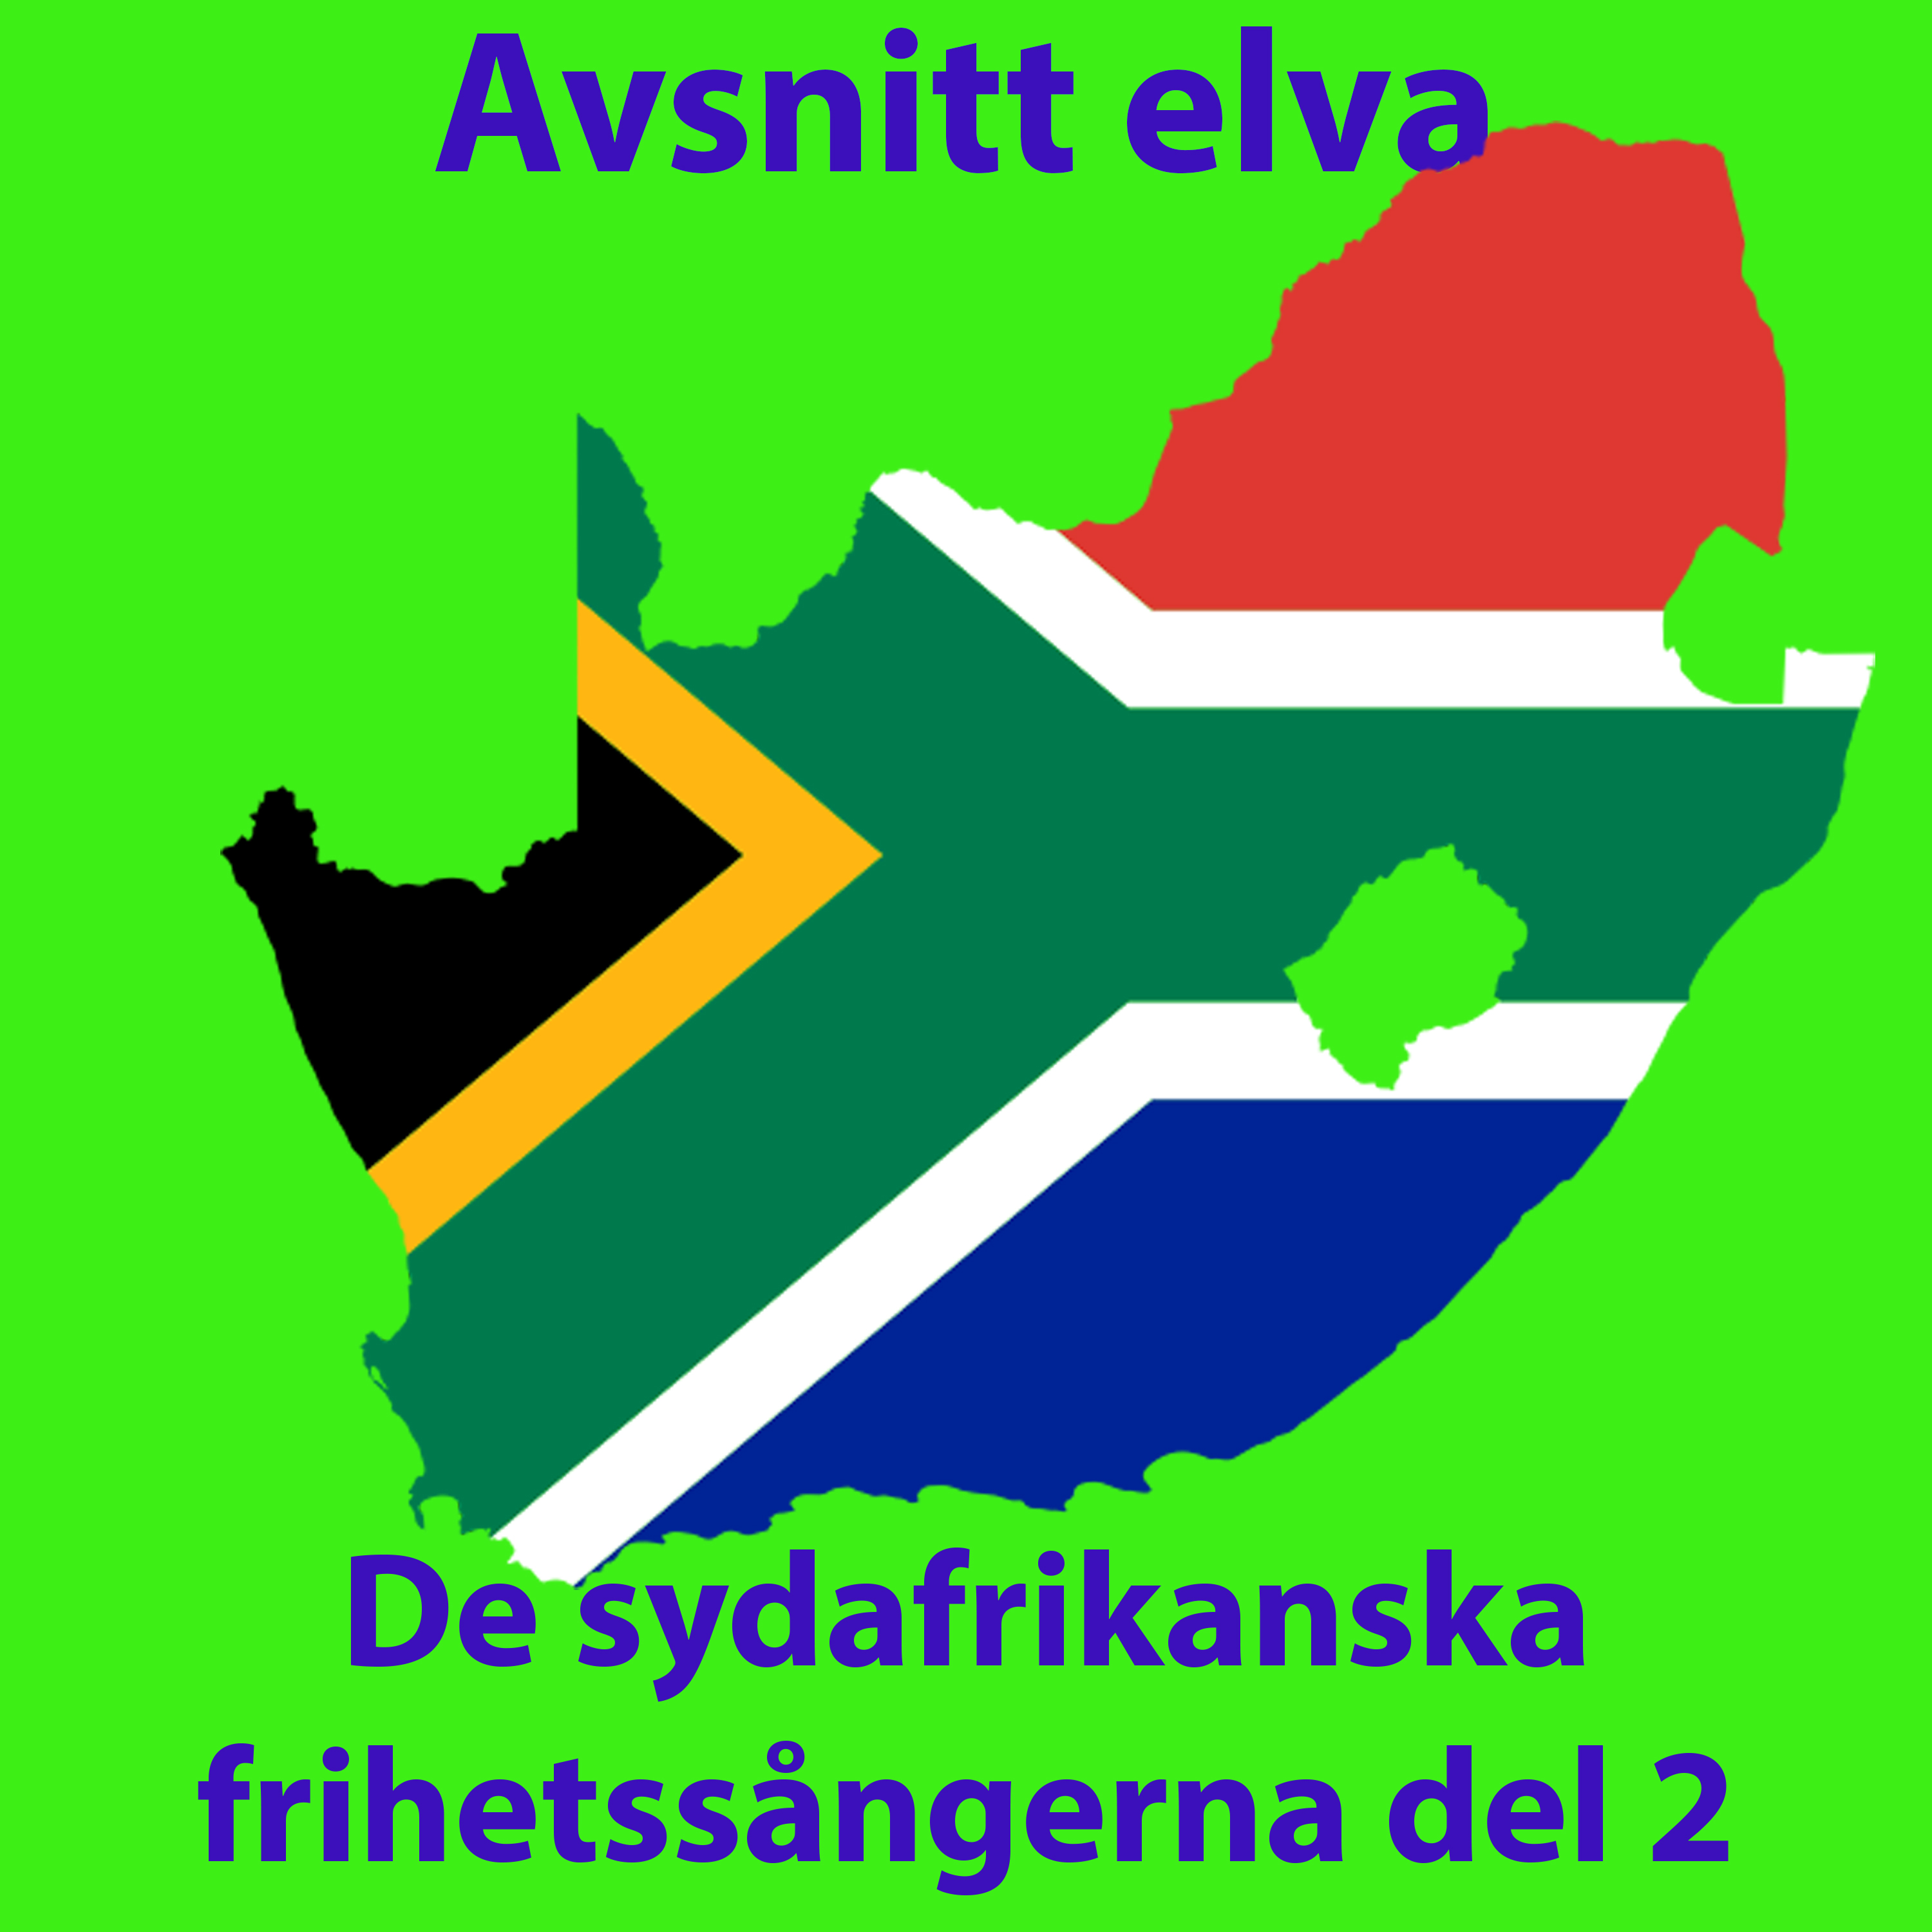 Körsångspodden avsnitt elva: De sydafrikanska frihetssångerna del 2